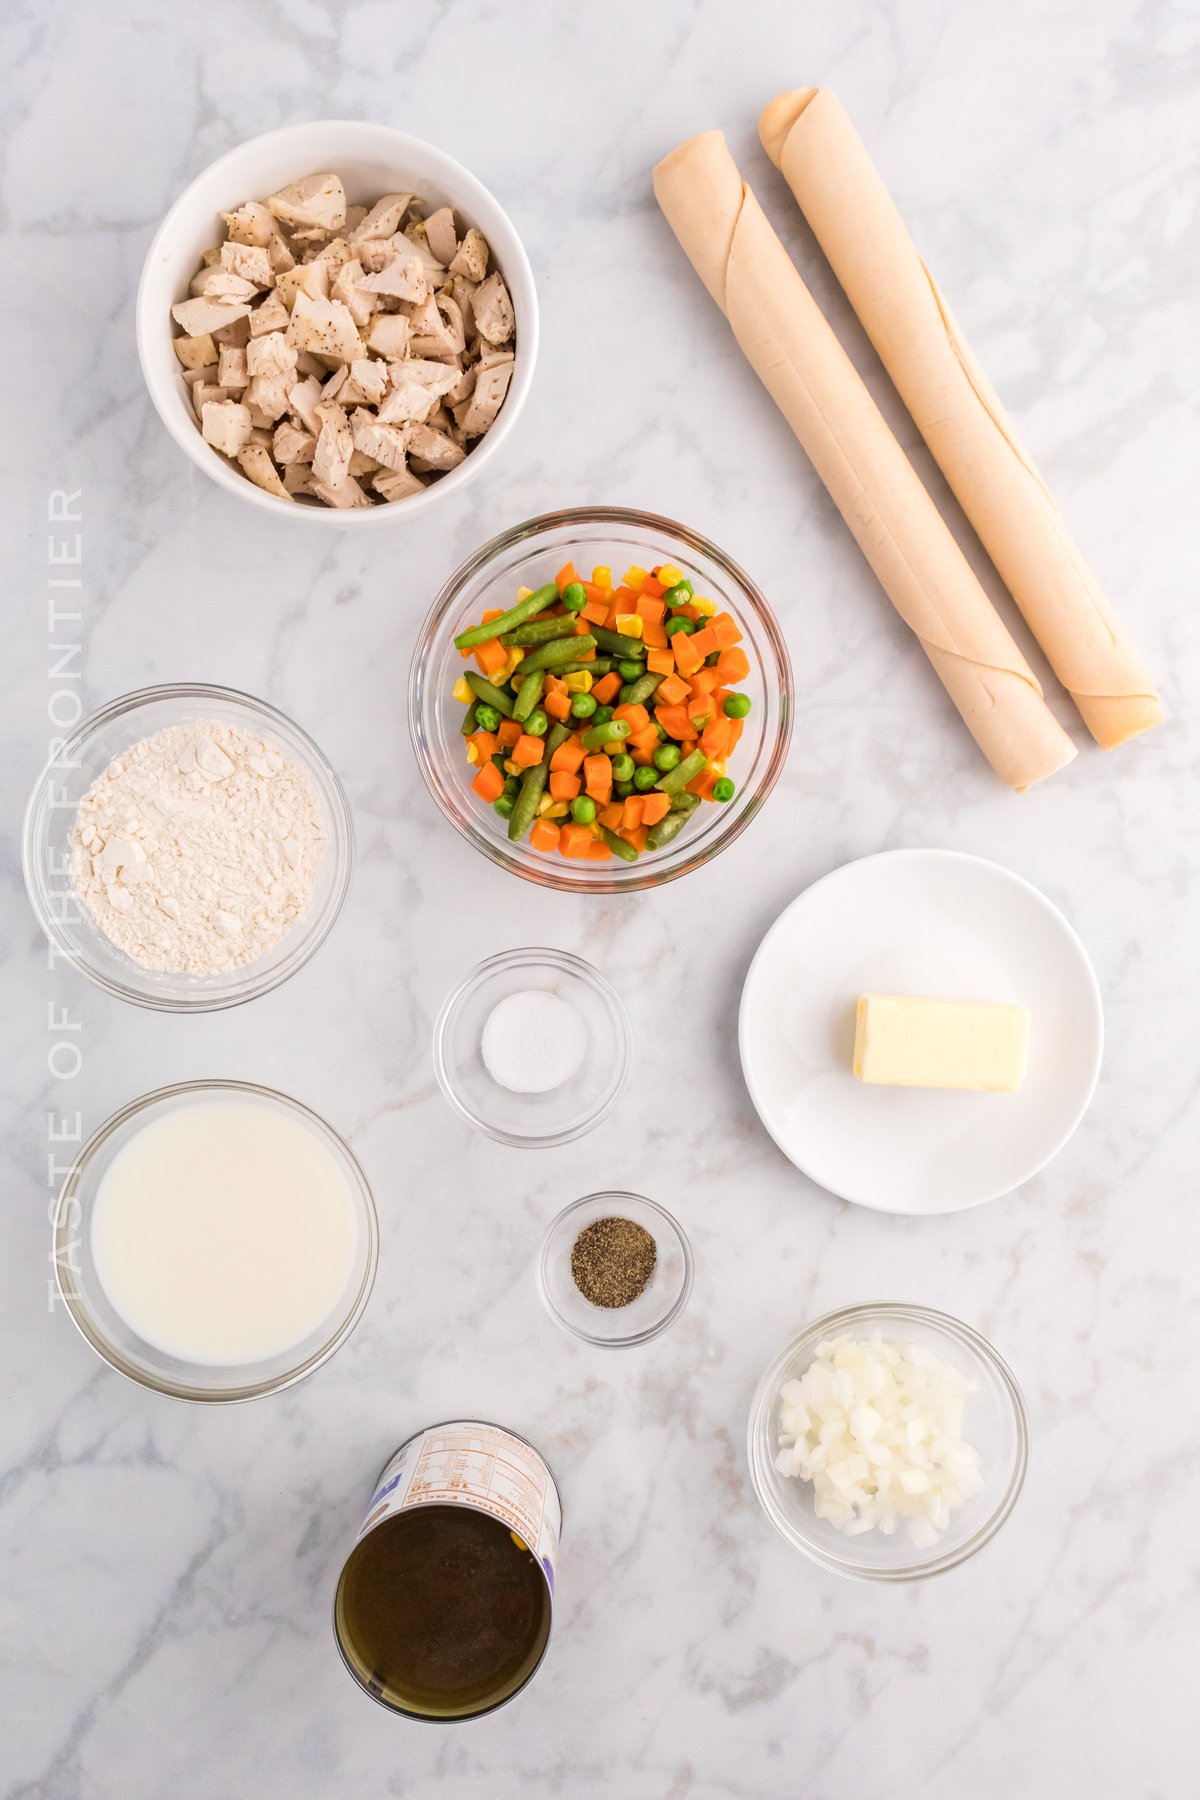 Easy Chicken Pot Pie Ingredients